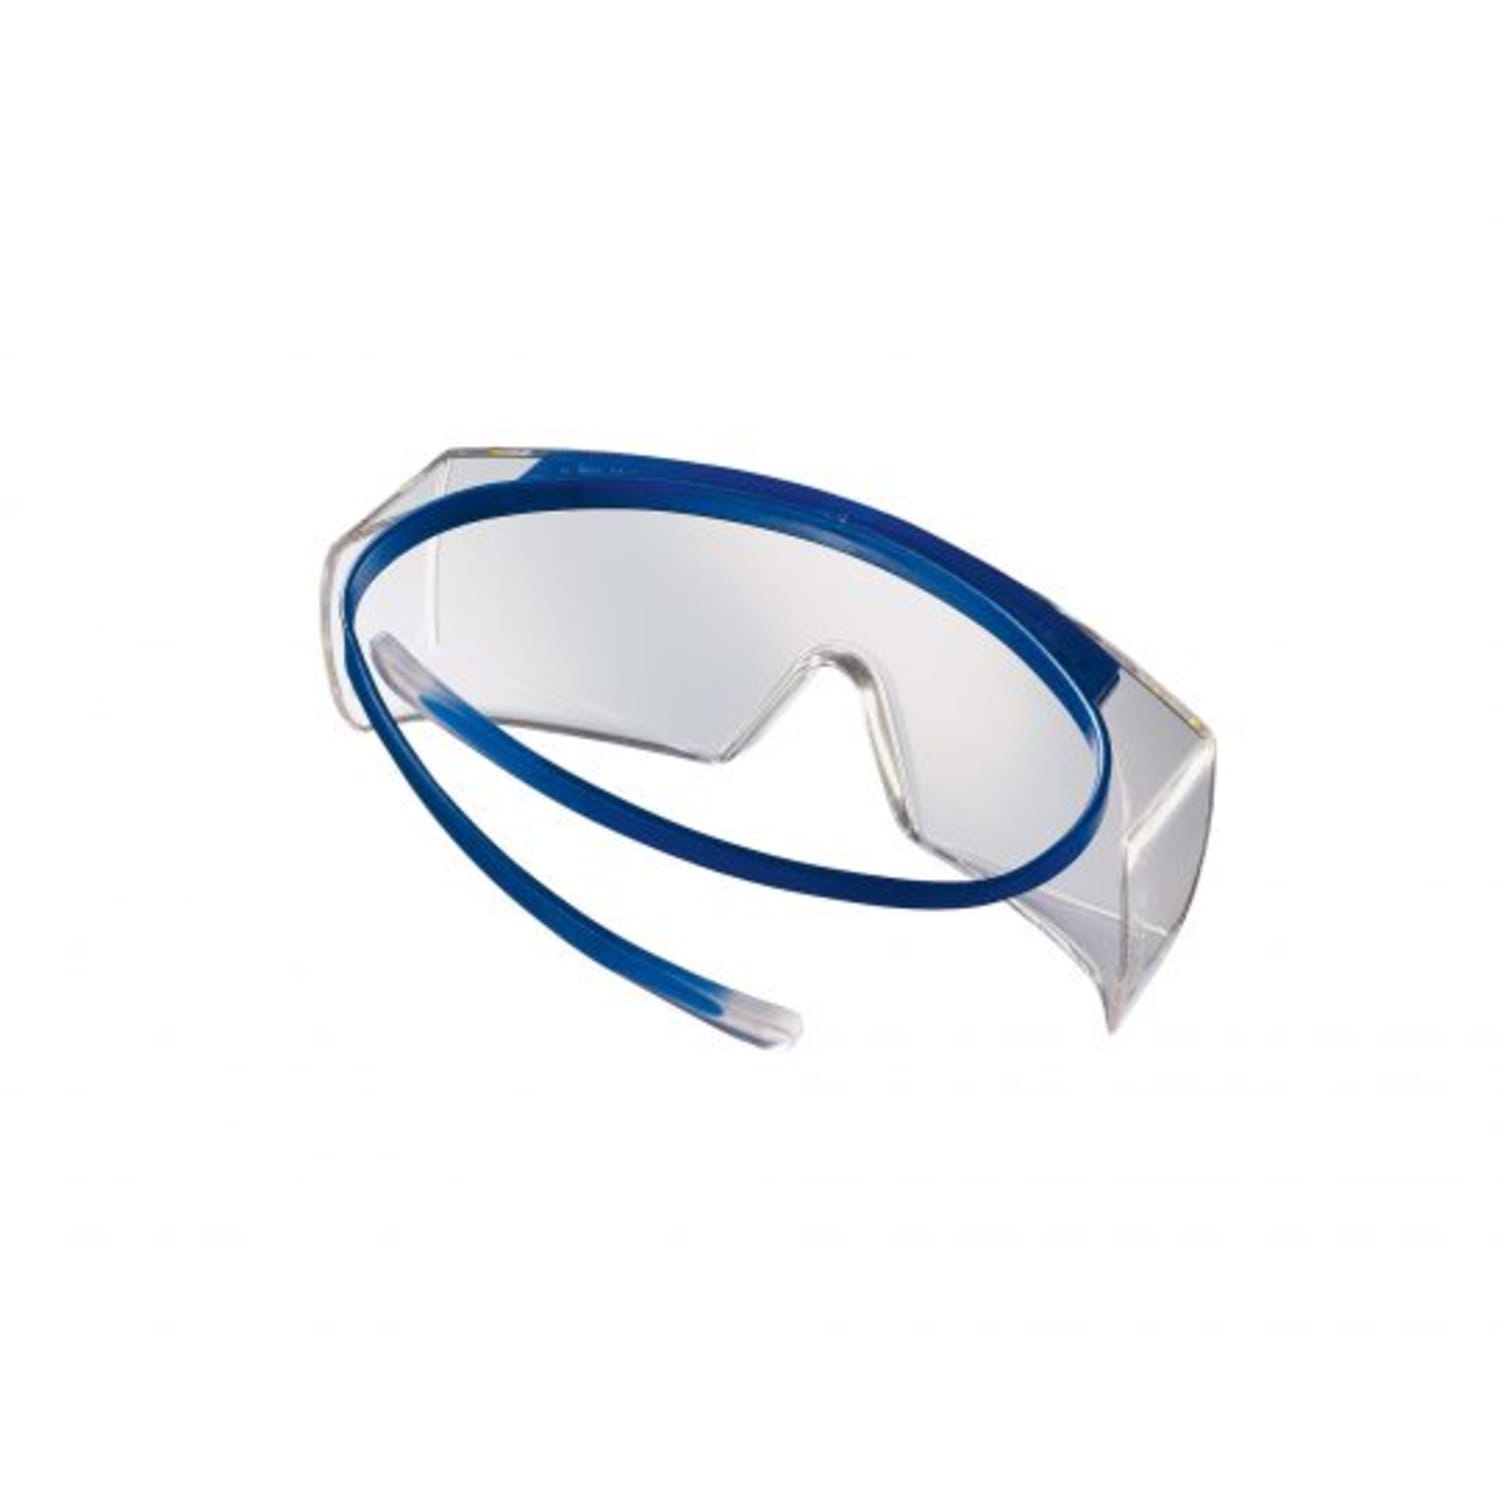 Sur-lunettes Super OTG photo du produit Secondaire 2 ZOOM